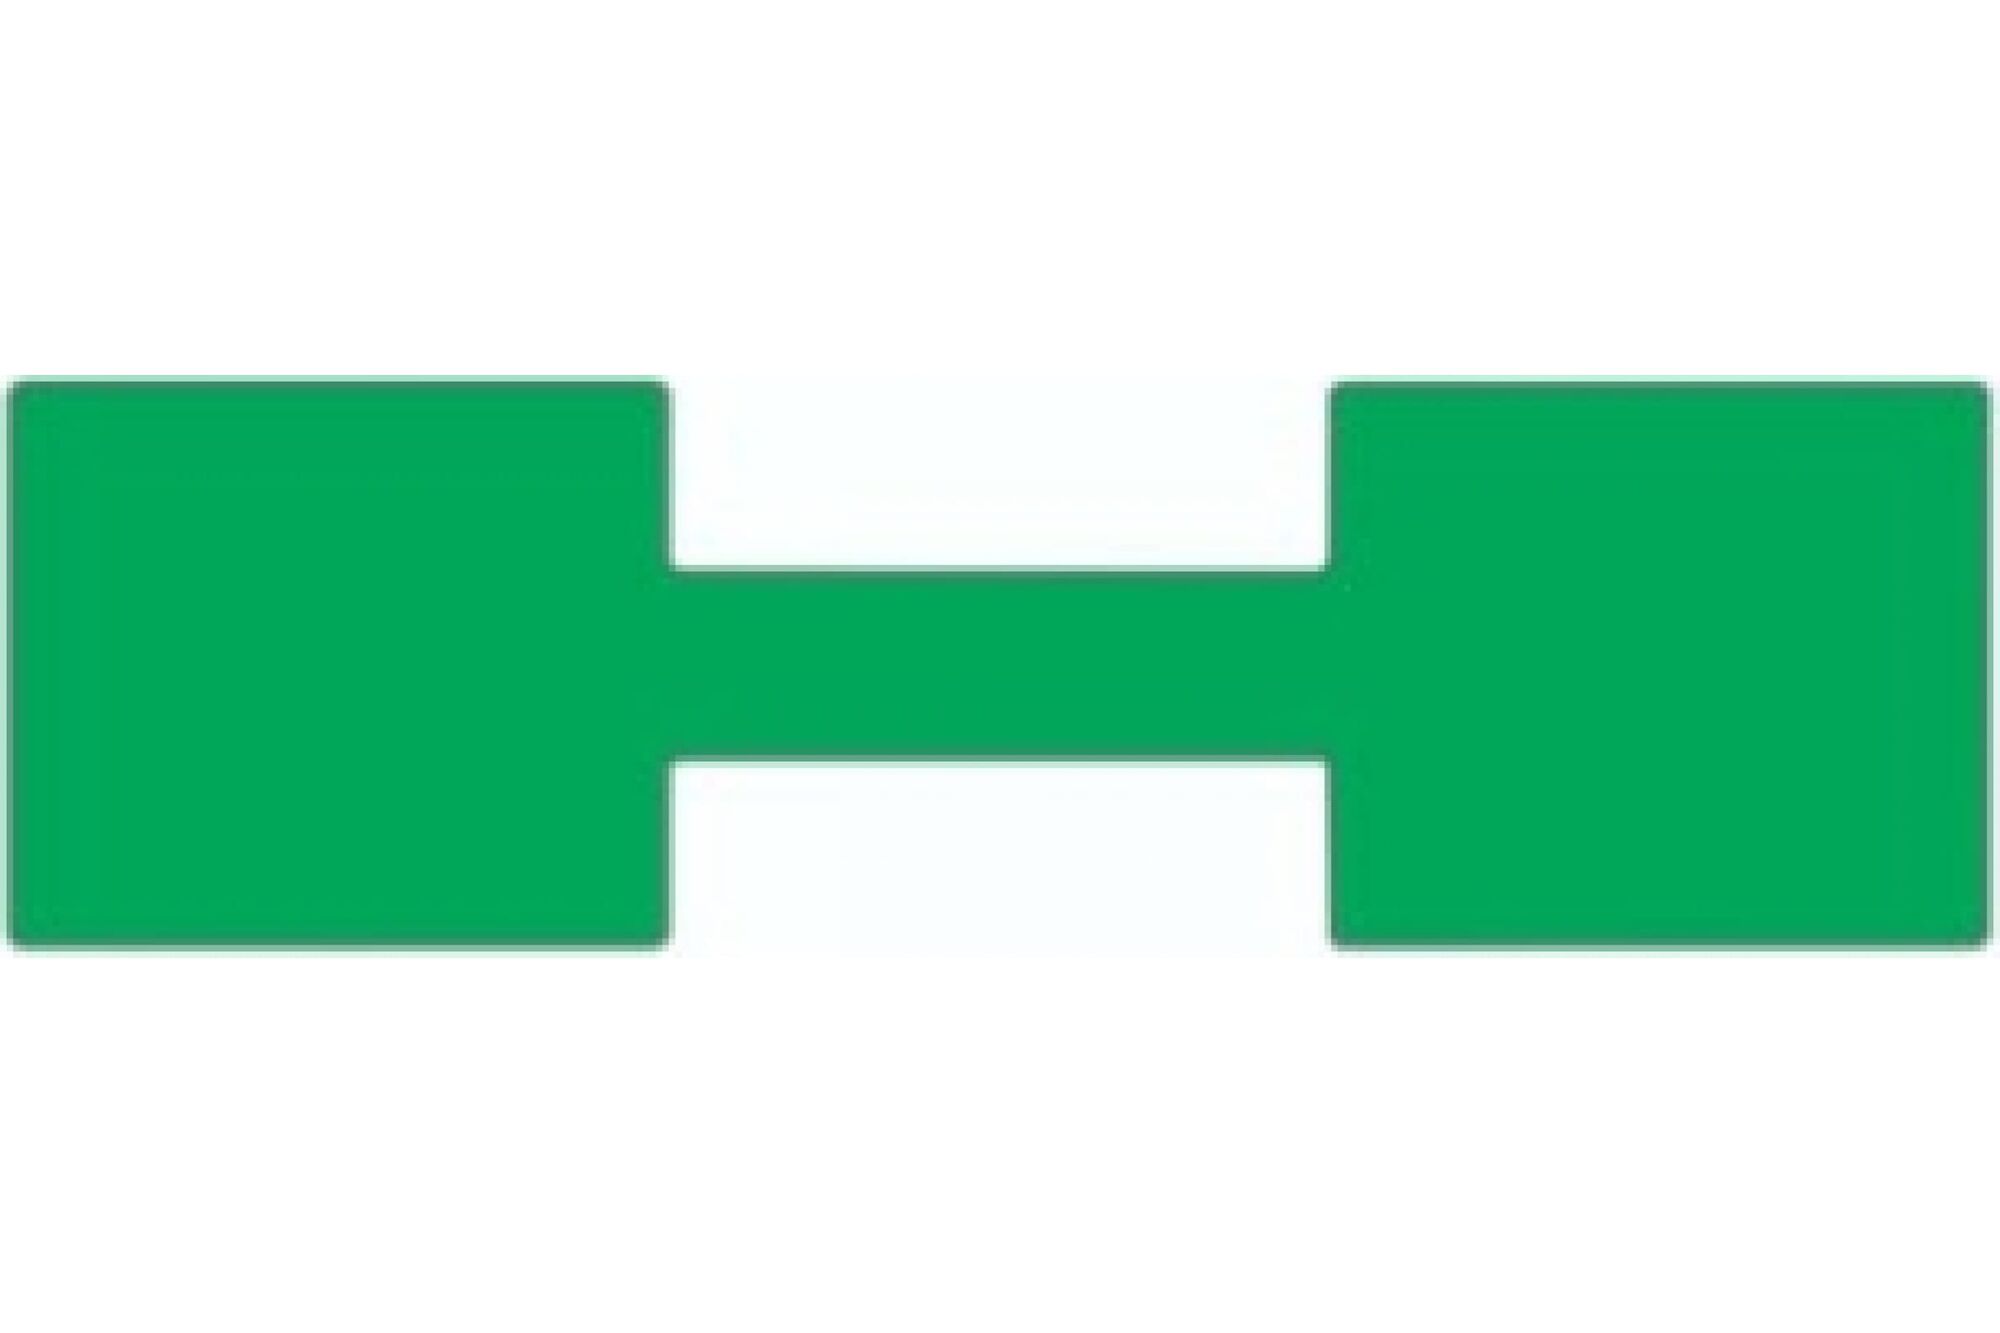 Этикетка для кабеля и провода SOFMIX зеленая, 30х105 мм, 500 шт./рулон, вт. 40 мм 331055